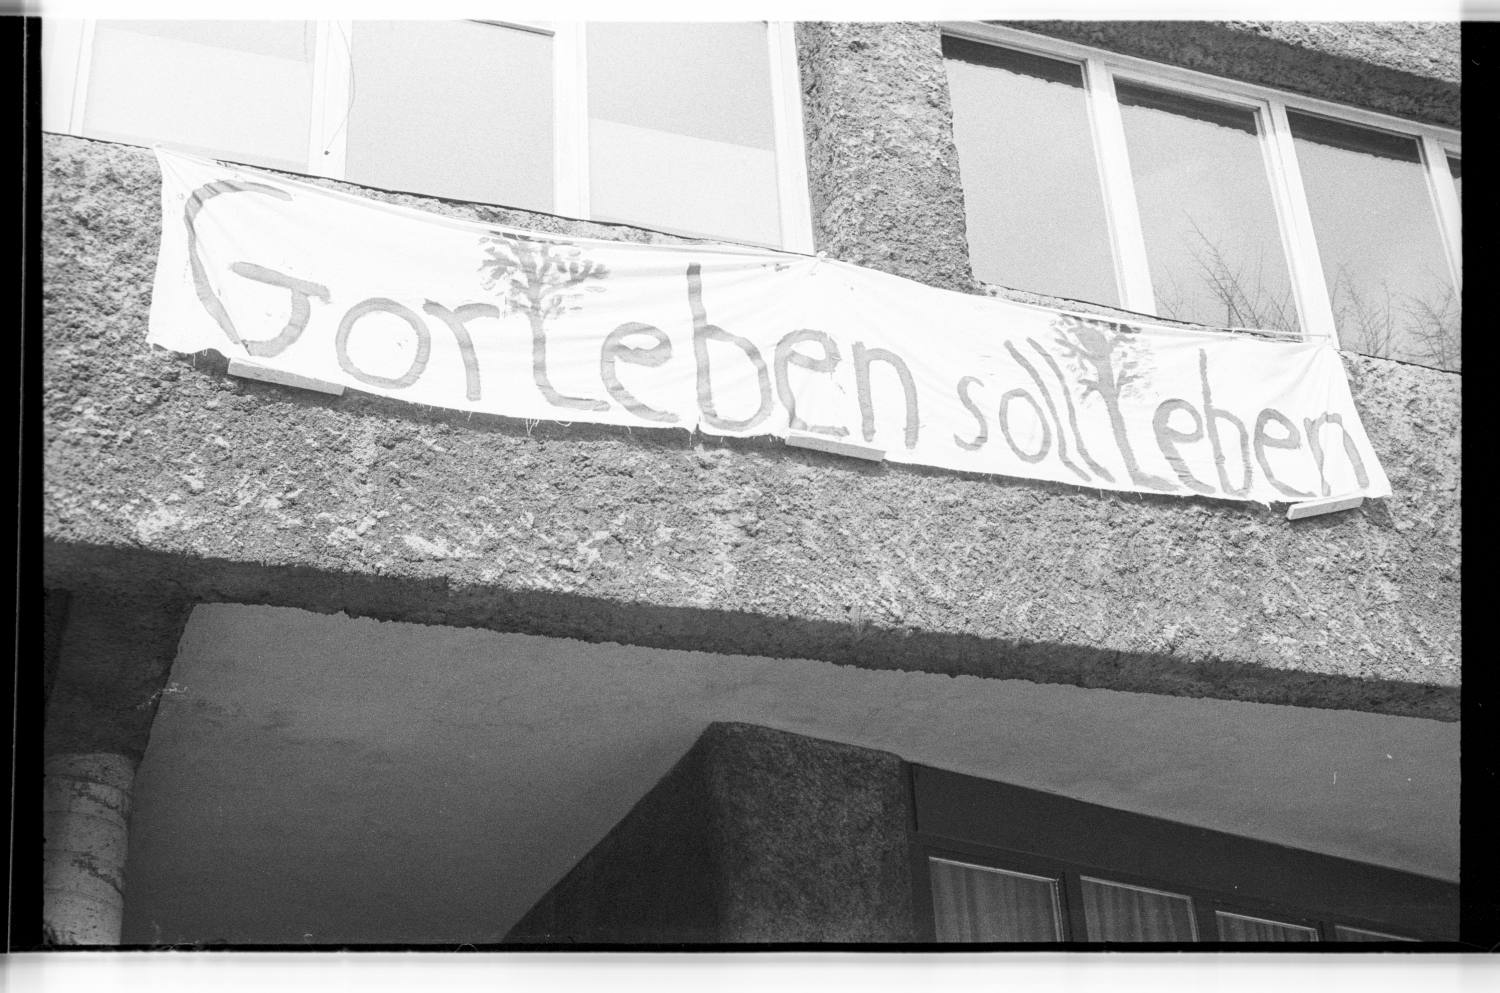 Kleinbildnegative: Transparent „Gorleben soll leben“, Hauptstraße, 1979 (Museen Tempelhof-Schöneberg/Jürgen Henschel RR-F)